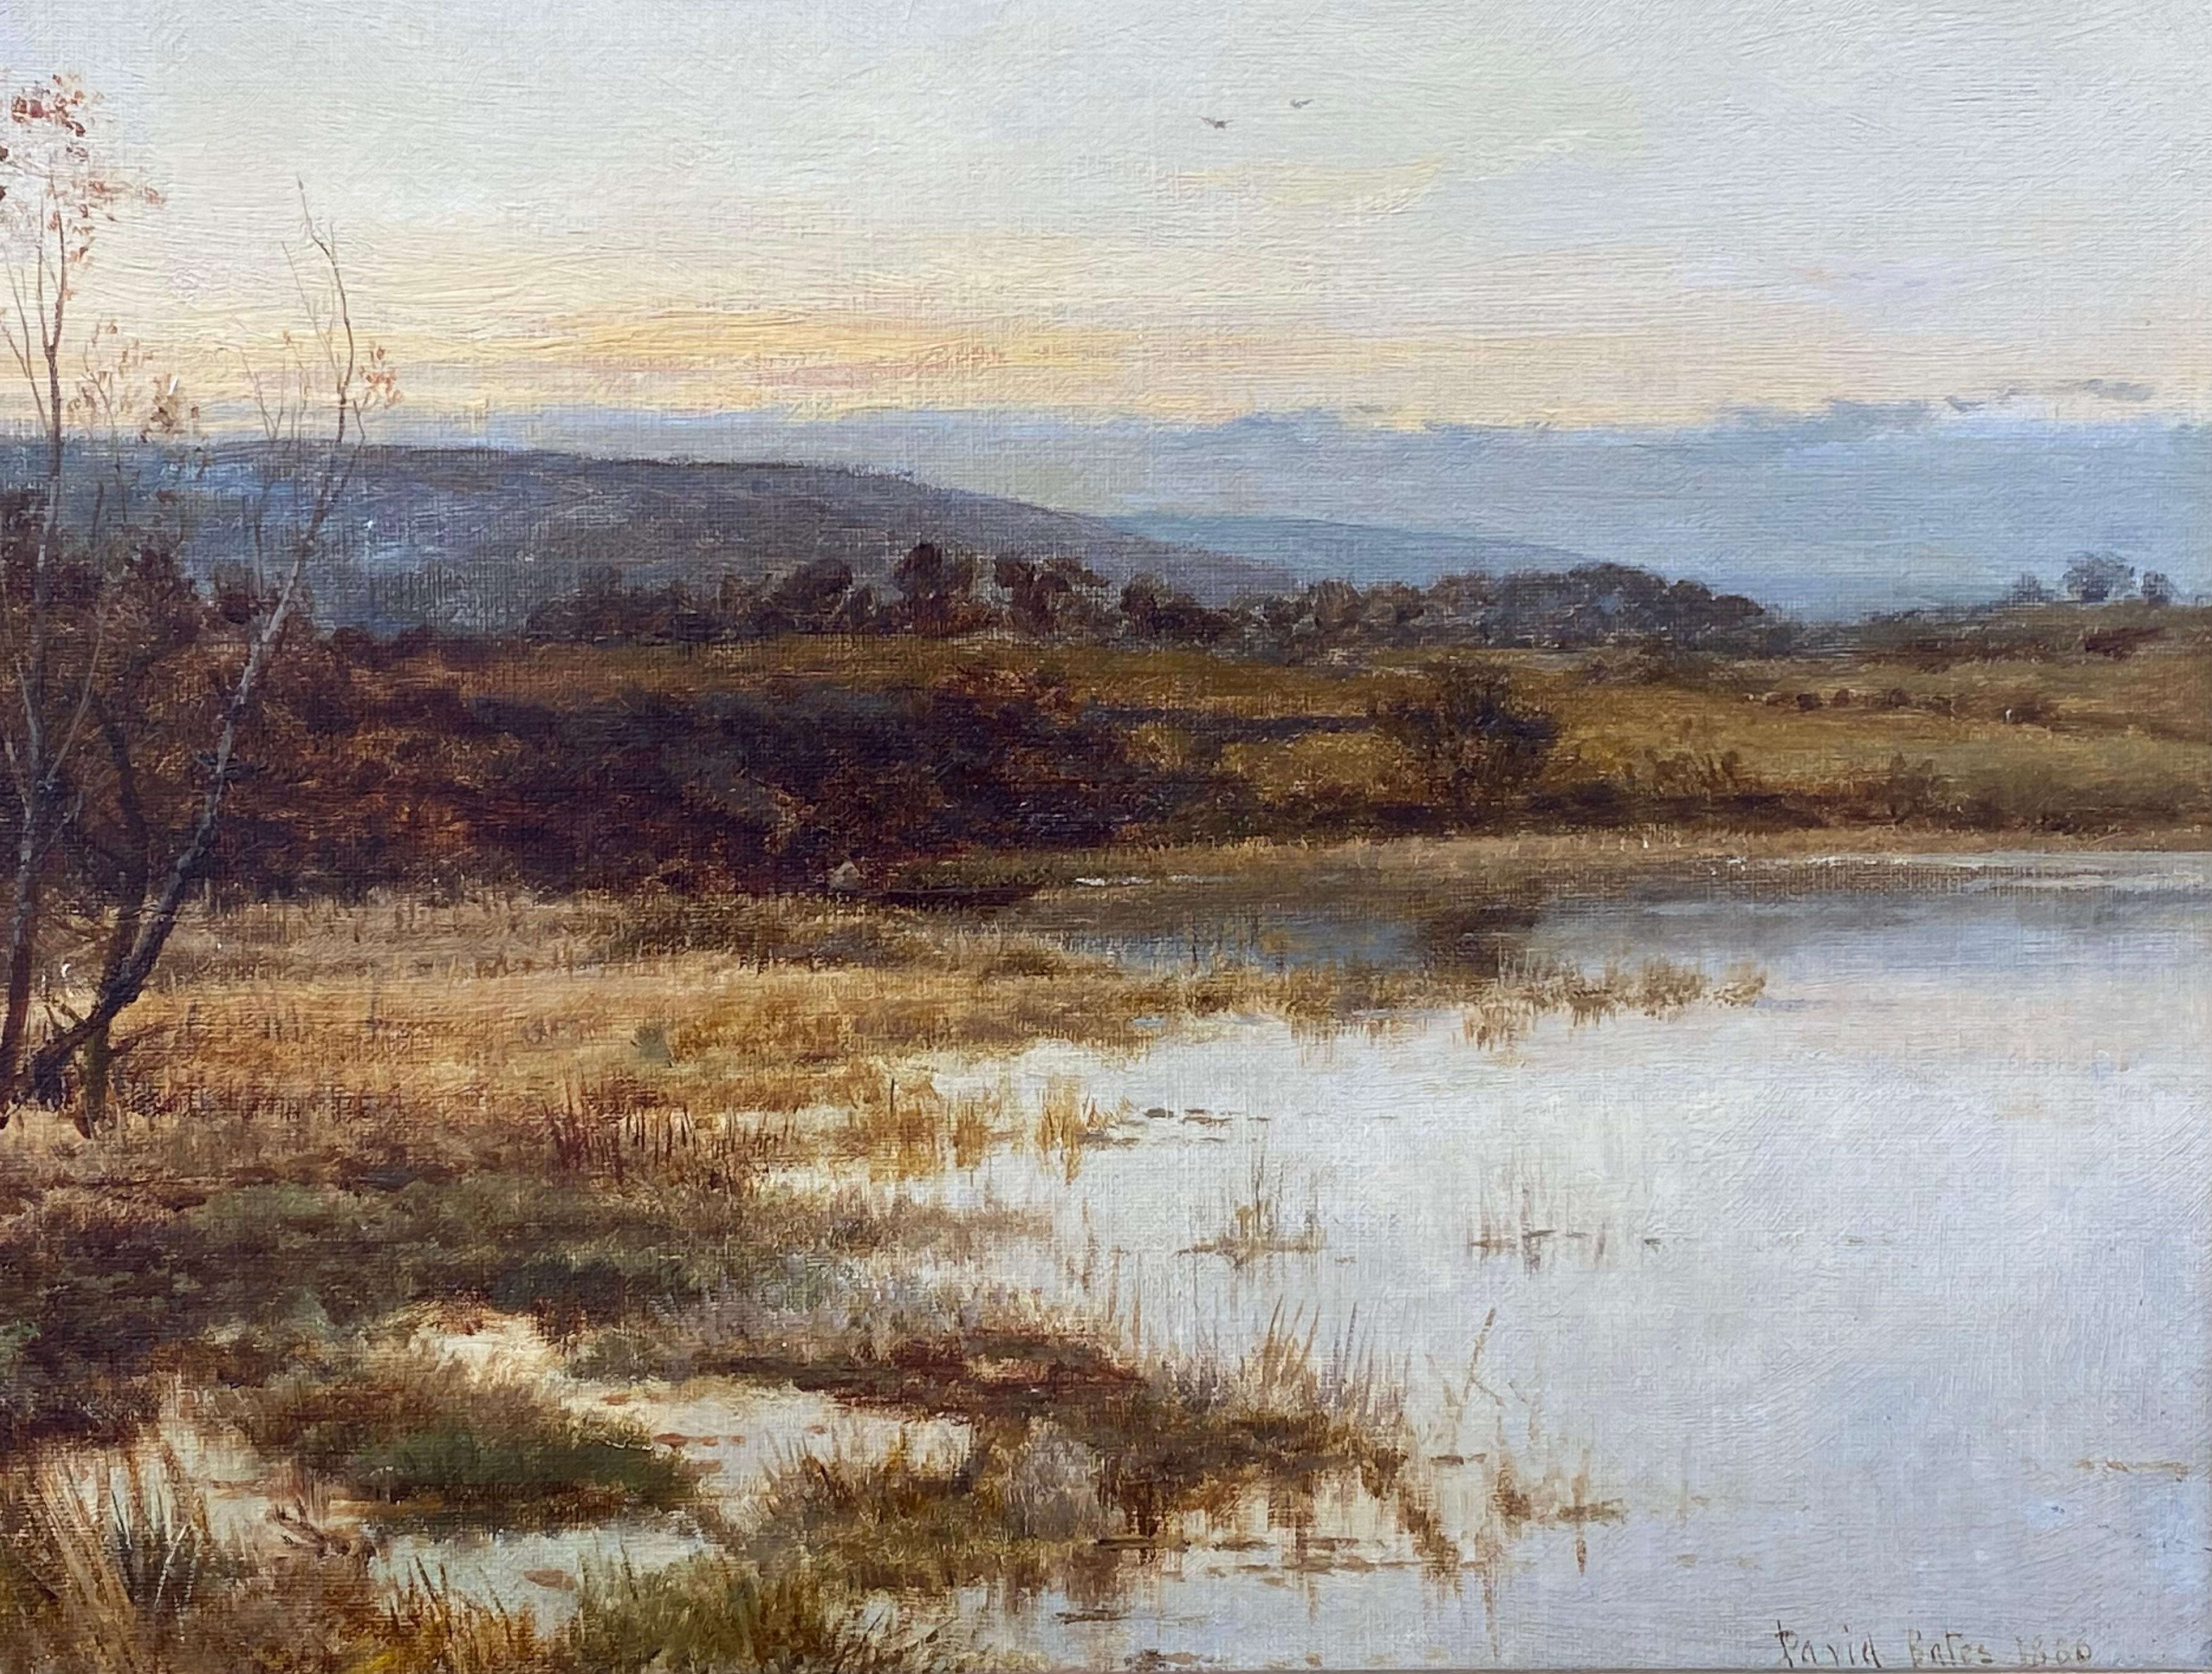 “Lake View” - Painting by David Bates b.1840